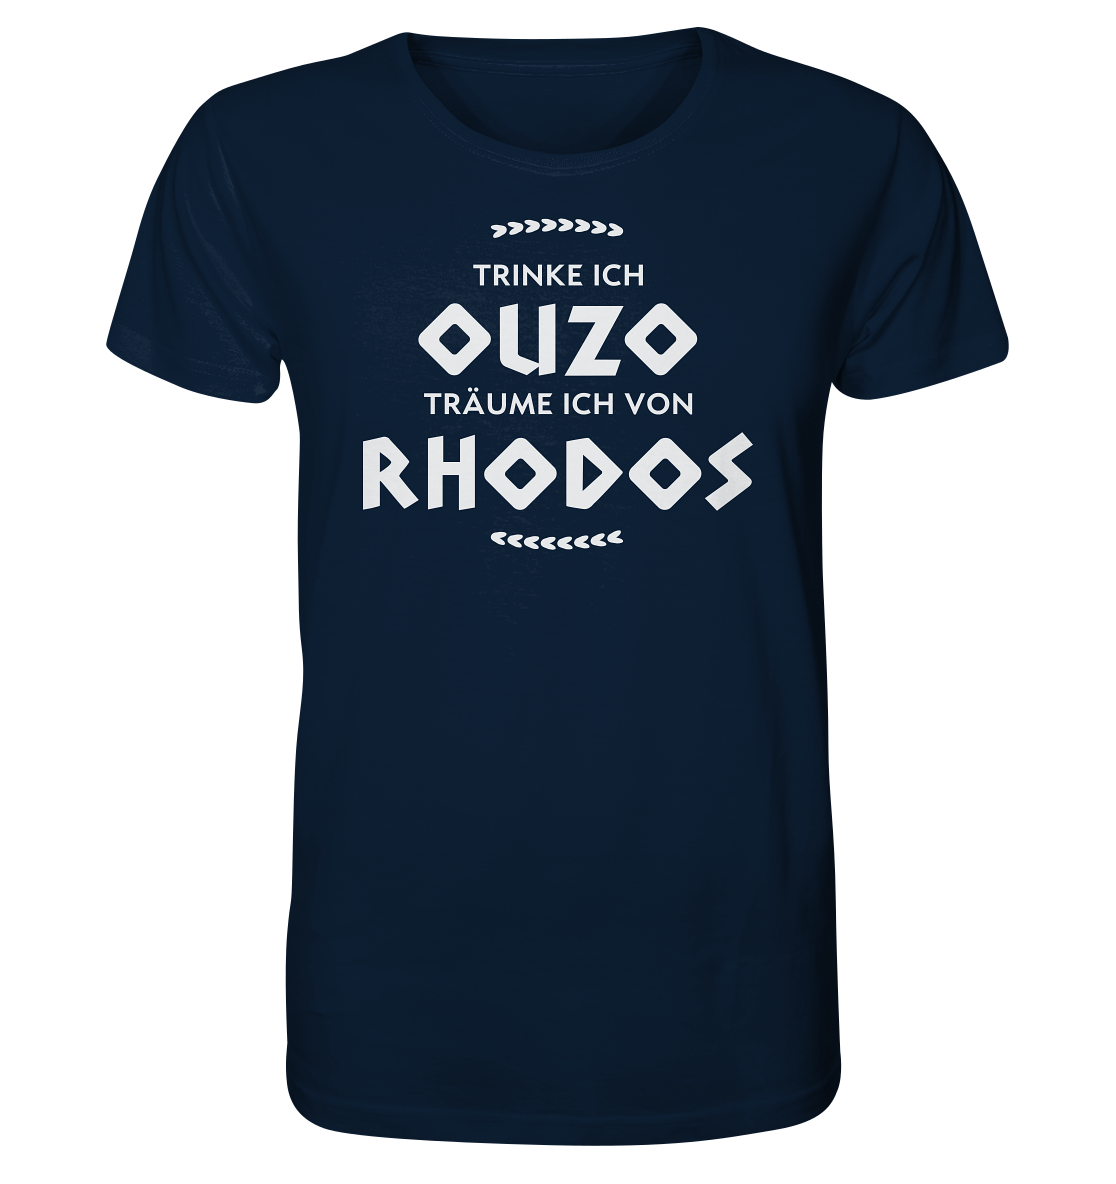 Trinke ich Ouzo träume ich von Rhodos - Organic Shirt